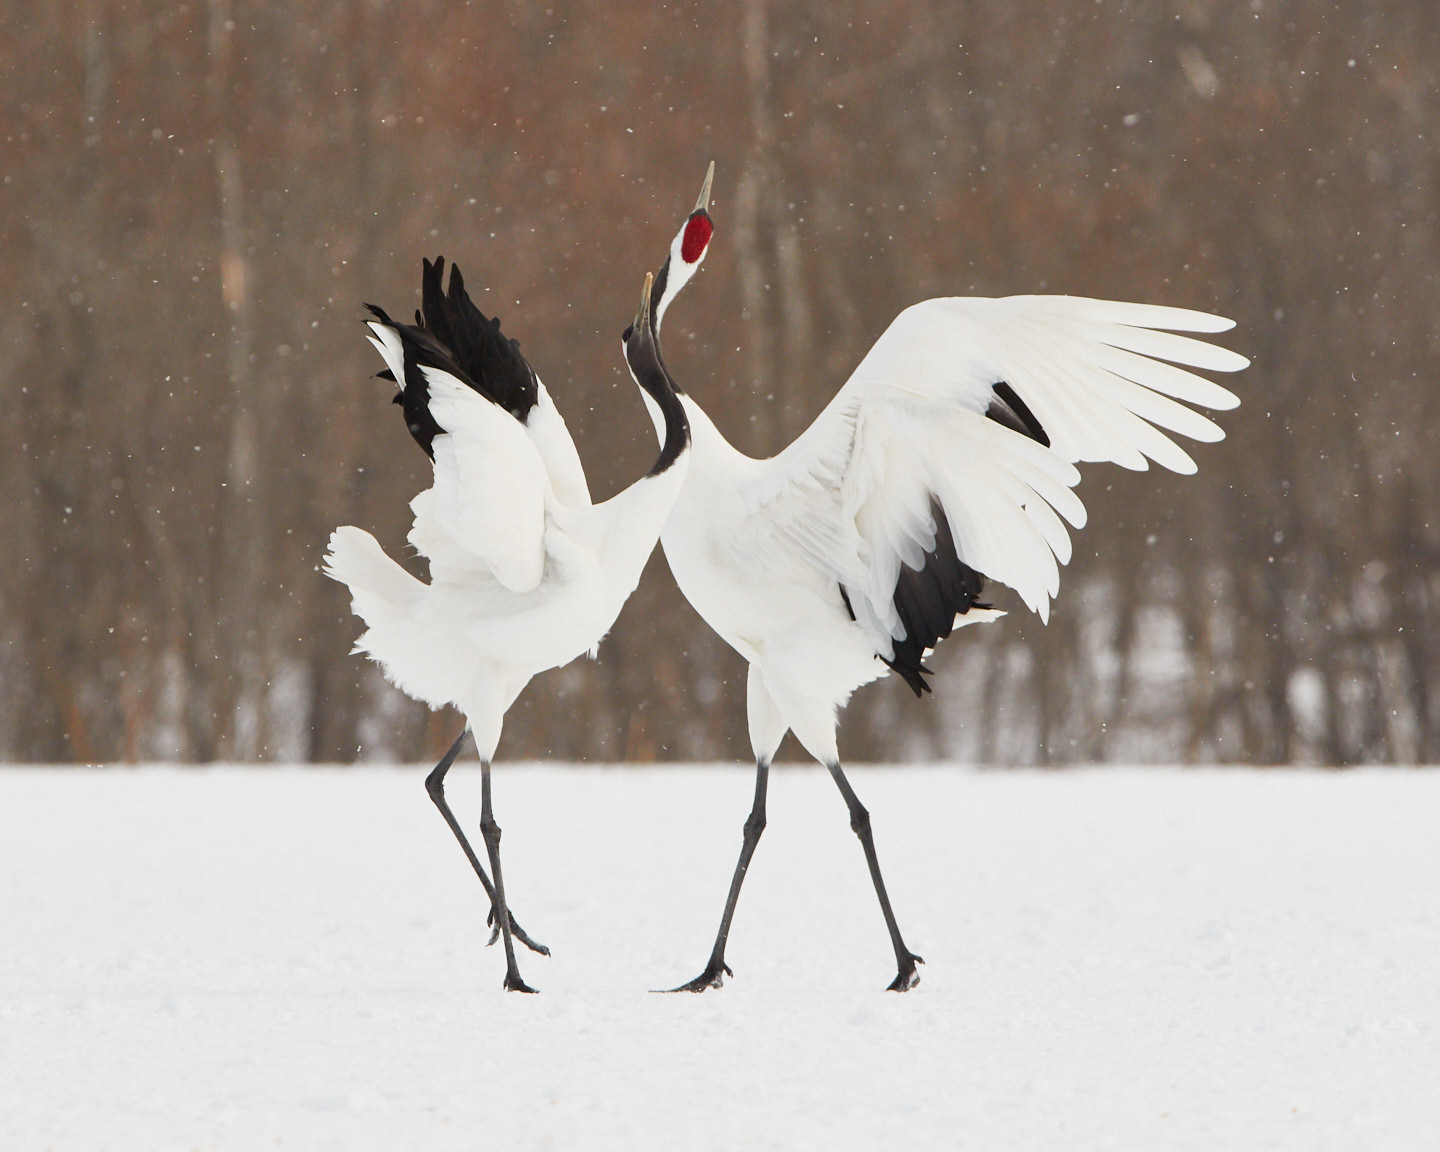 Cranes' Dance